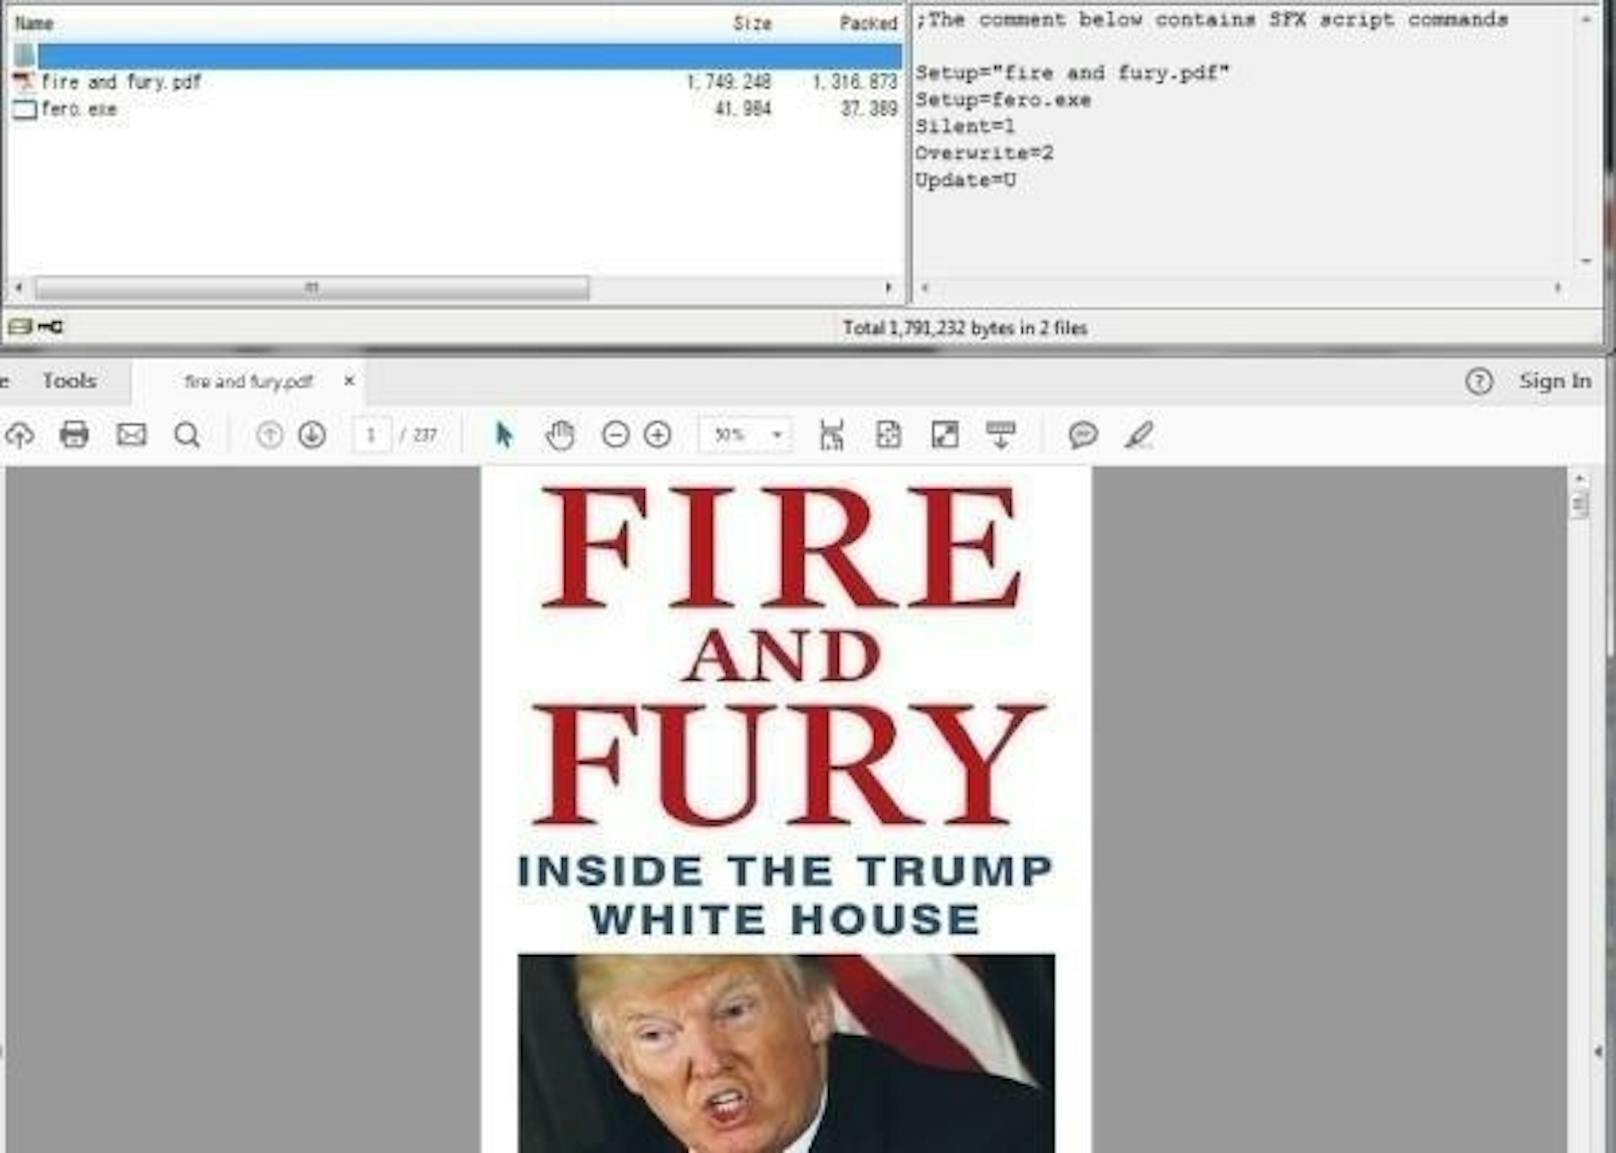 Hacker nutzen eine PDF-Version des Buchs "Fire and Fury" über US-Präsident Donald Trump als Virenschleuder. Sicherheitsforscher haben nämlich in einer Version, die online kursiert, schädliche Software gefunden. In der Version, die über Online-Tauschbörsen angeboten wird, wurde in das PDF eingebettet Malware gefunden. Die gute Nachricht: Das schädliche Tool wird von praktisch allen gängigen Antiviren-Tools erkannt.